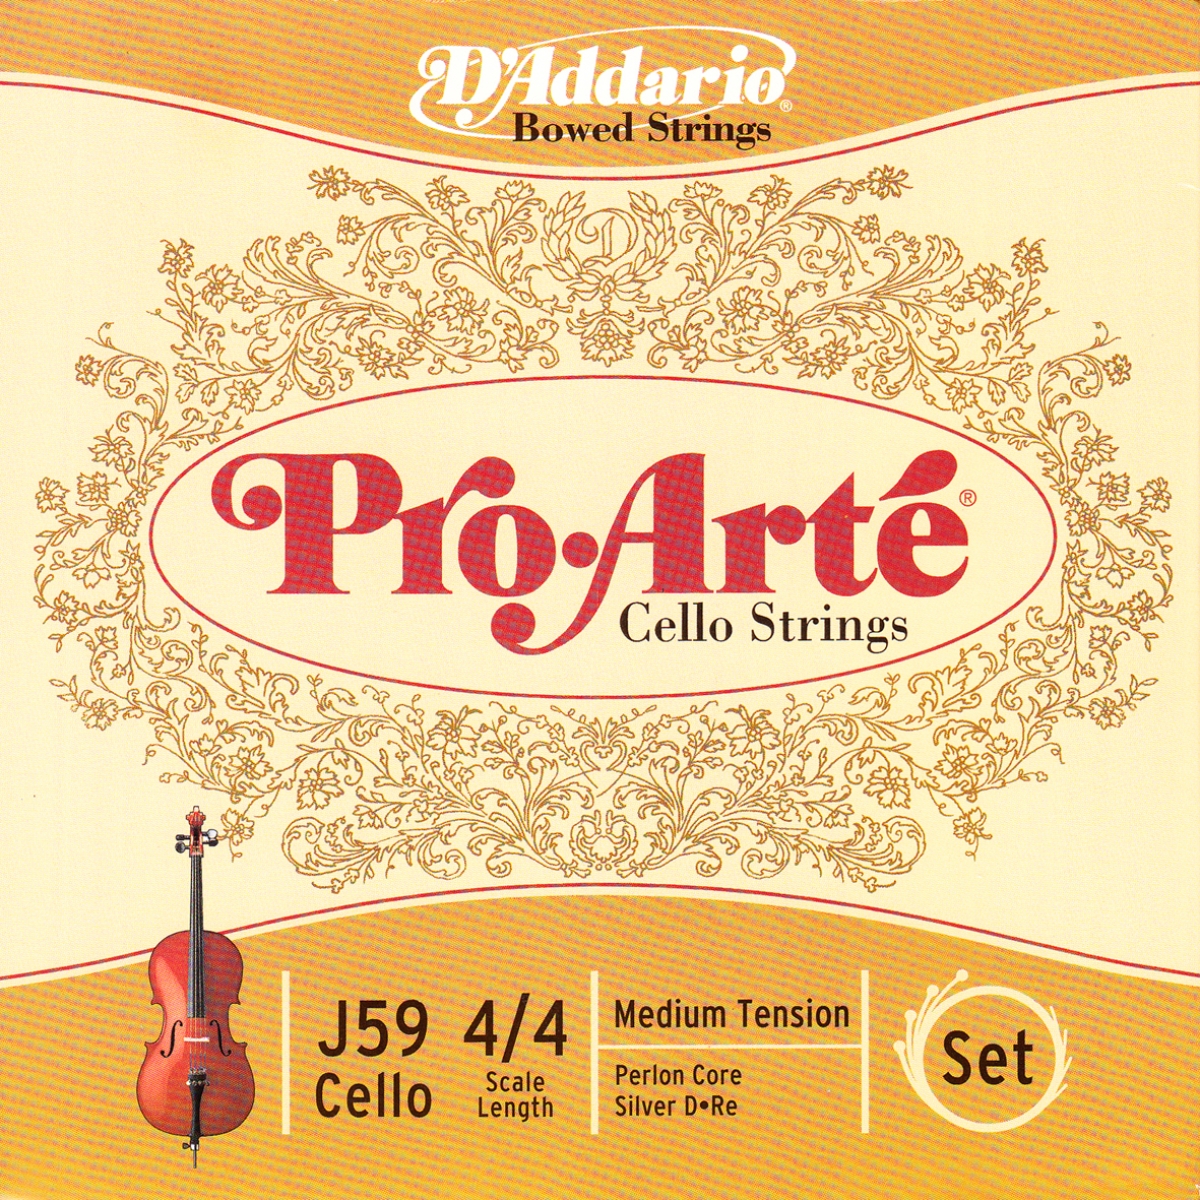 【正規販売店】 D'Addario ダダリオ チェロ弦 H510 4M Helicore Cello Strings SET 国内正規品